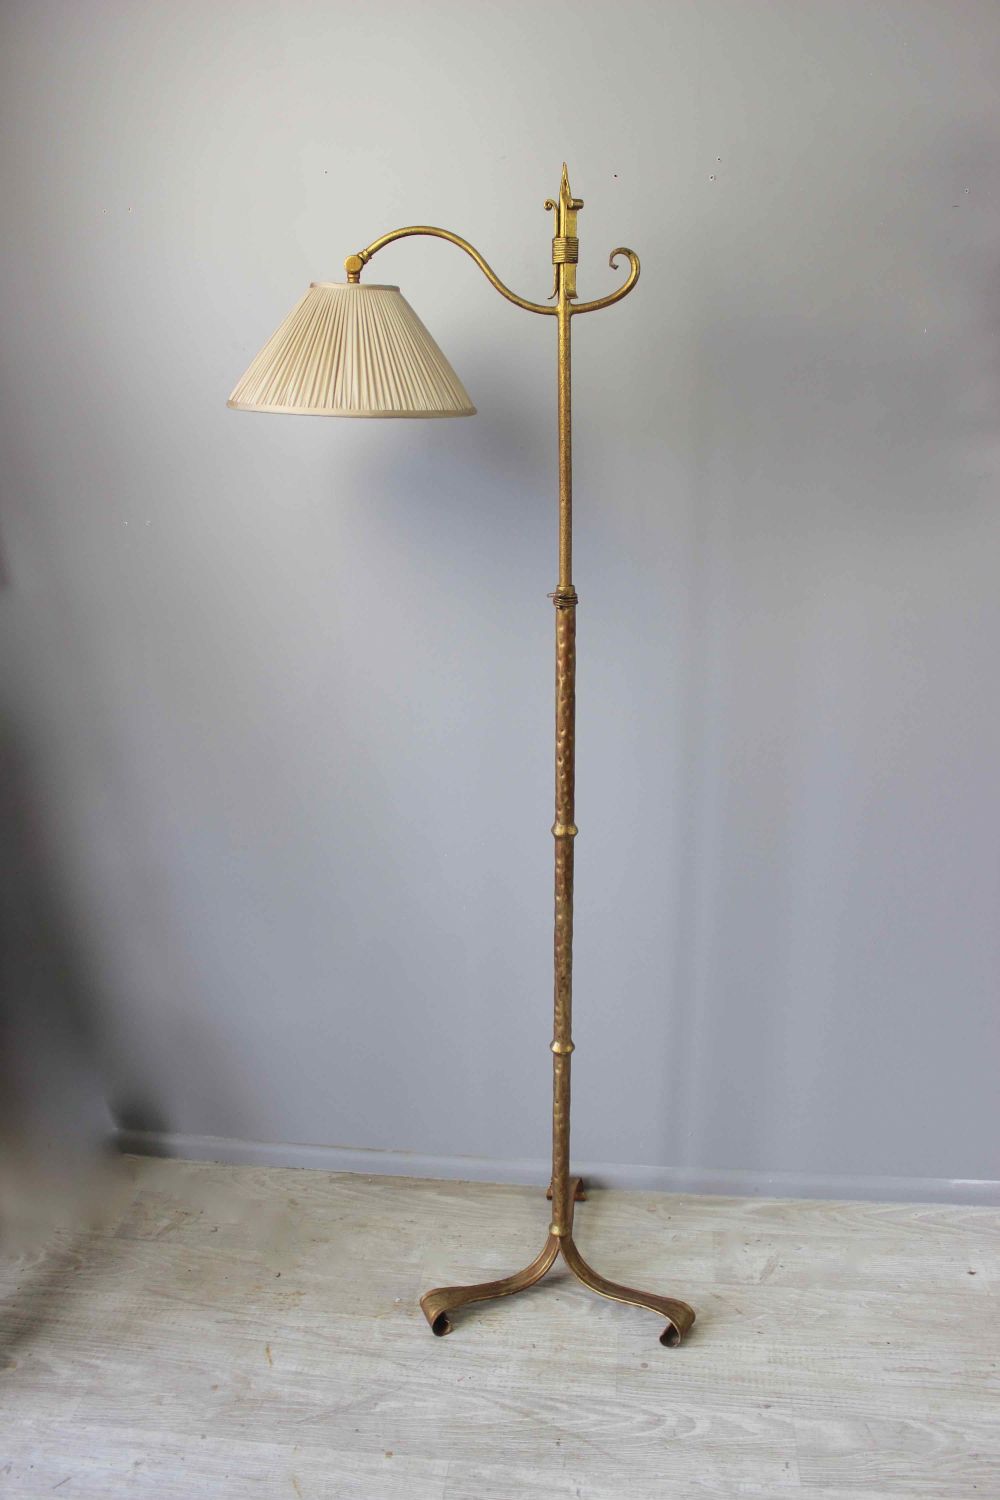 Spanish Gilt Metal Adjustable Height Floor Lamp With Adjustable Height Floor Lamps (View 2 of 20)